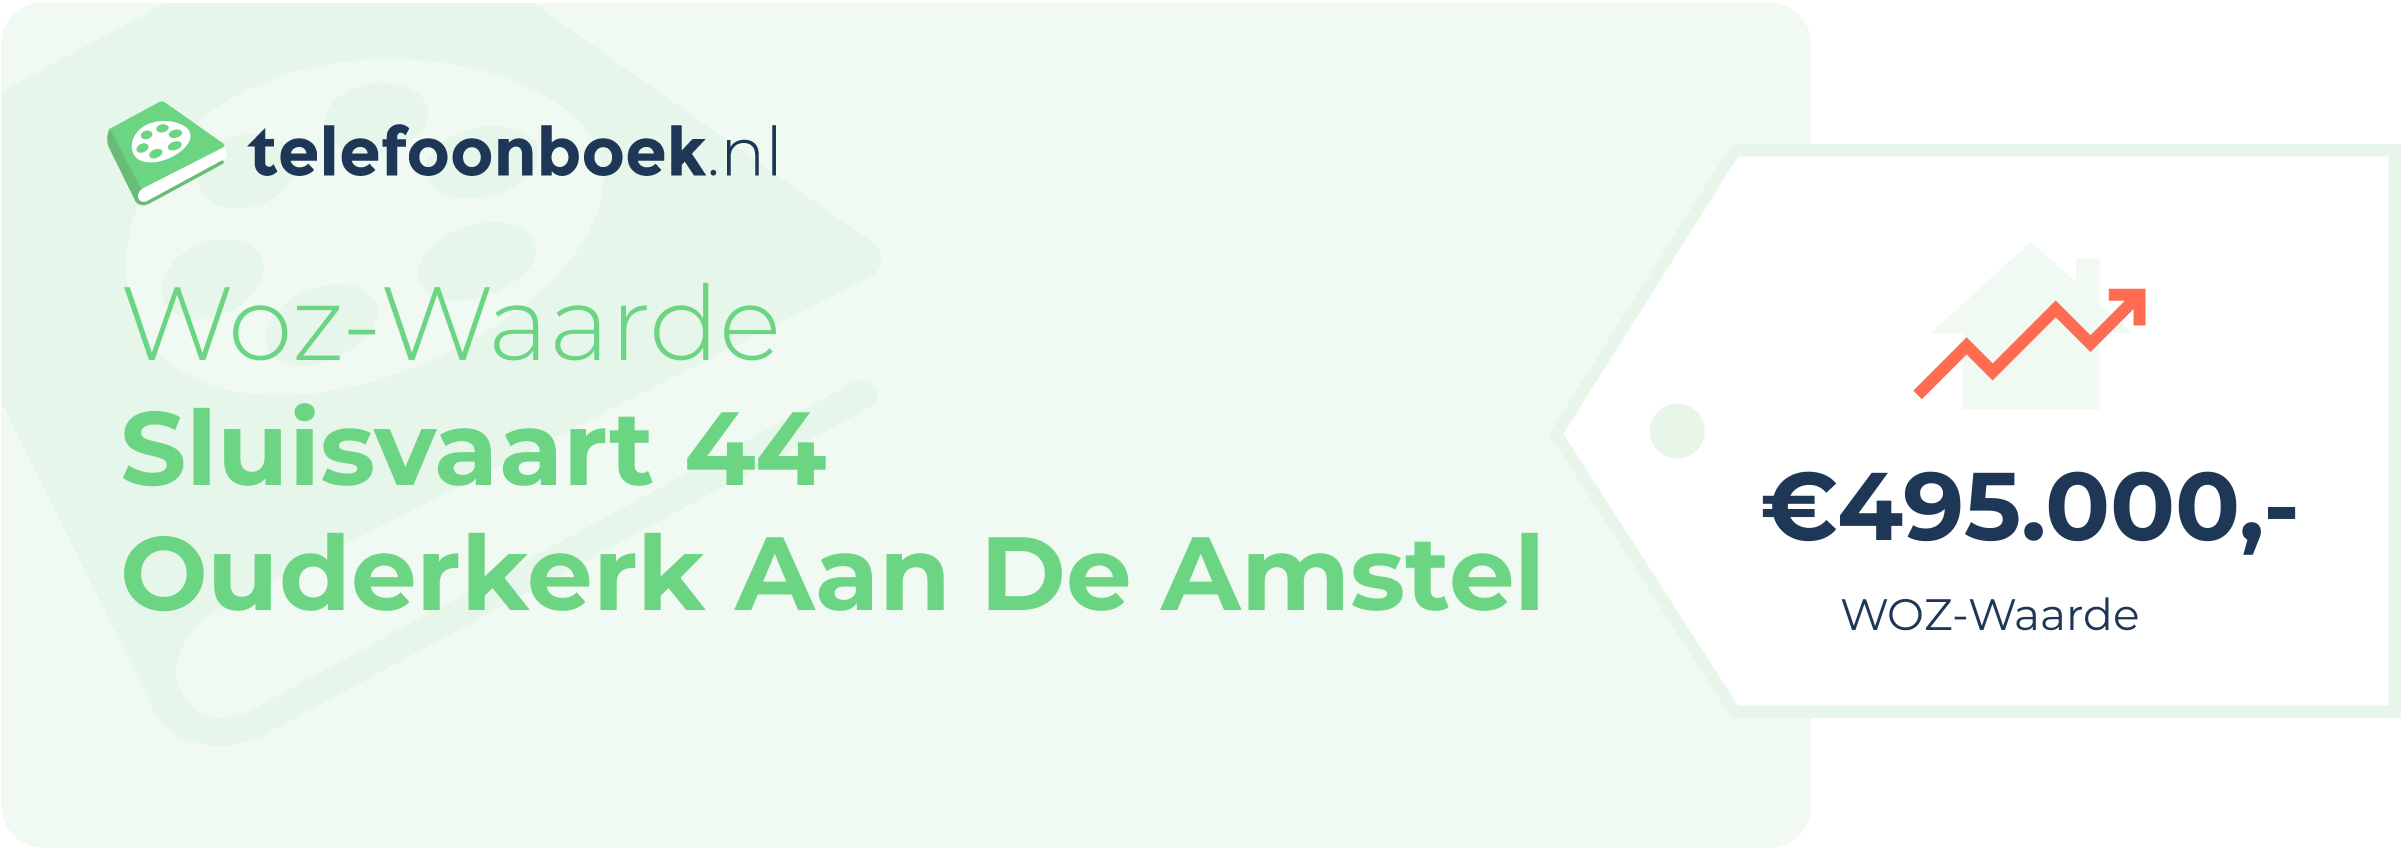 WOZ-waarde Sluisvaart 44 Ouderkerk Aan De Amstel